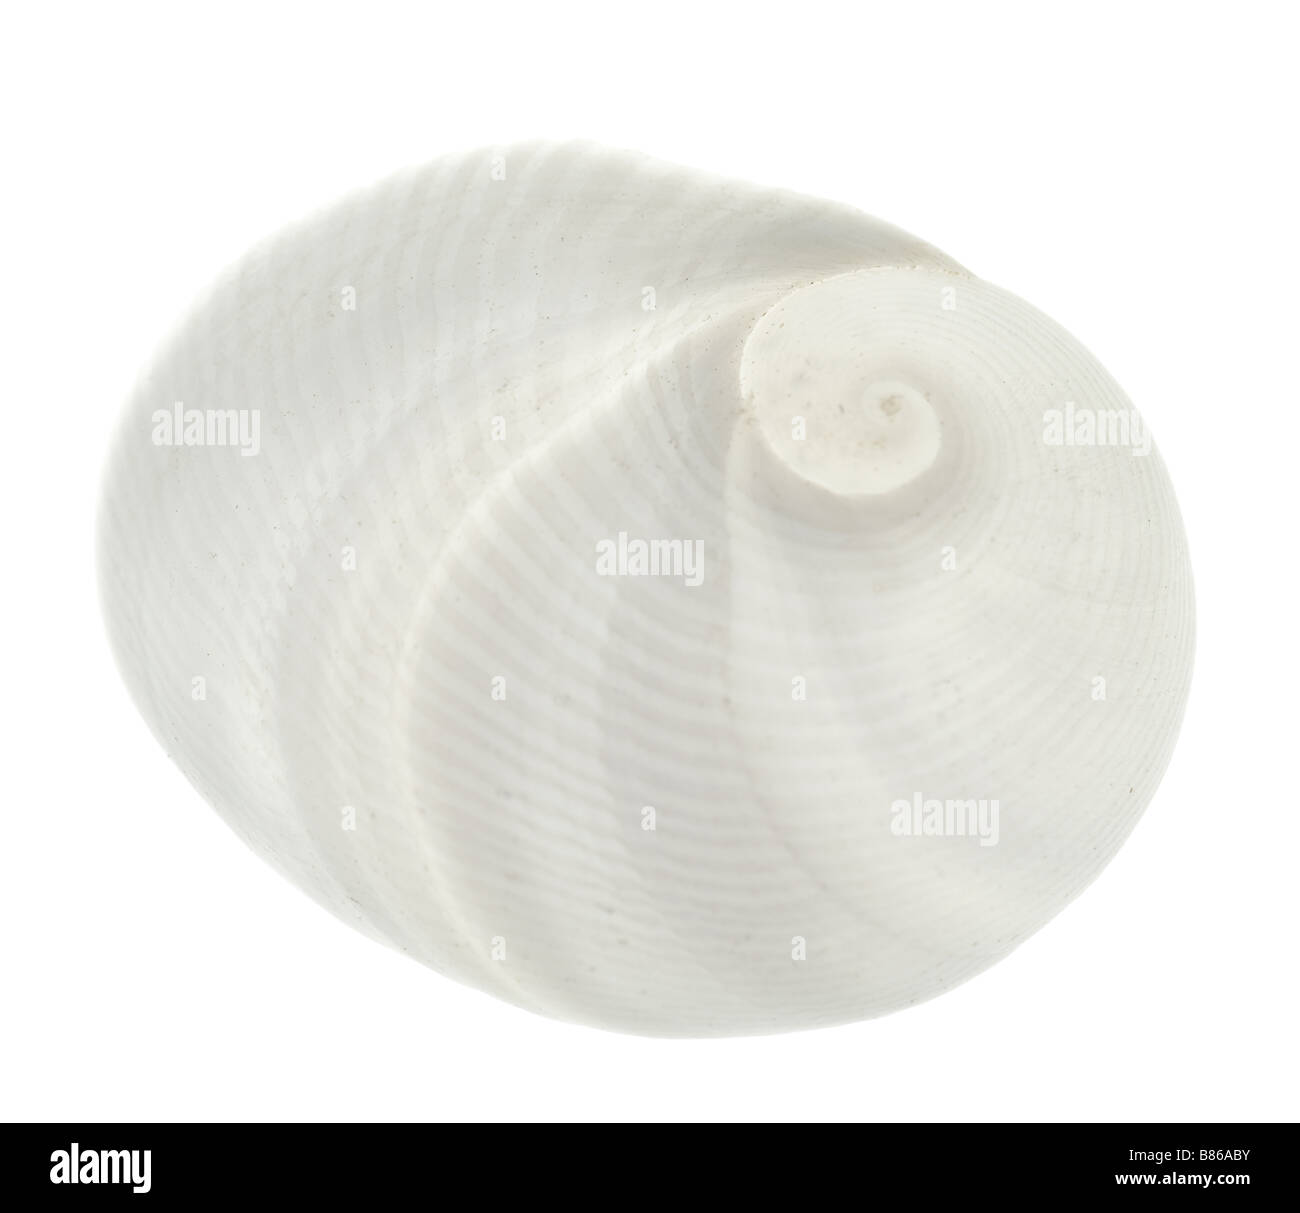 seashell isolated on white background Stock Photo